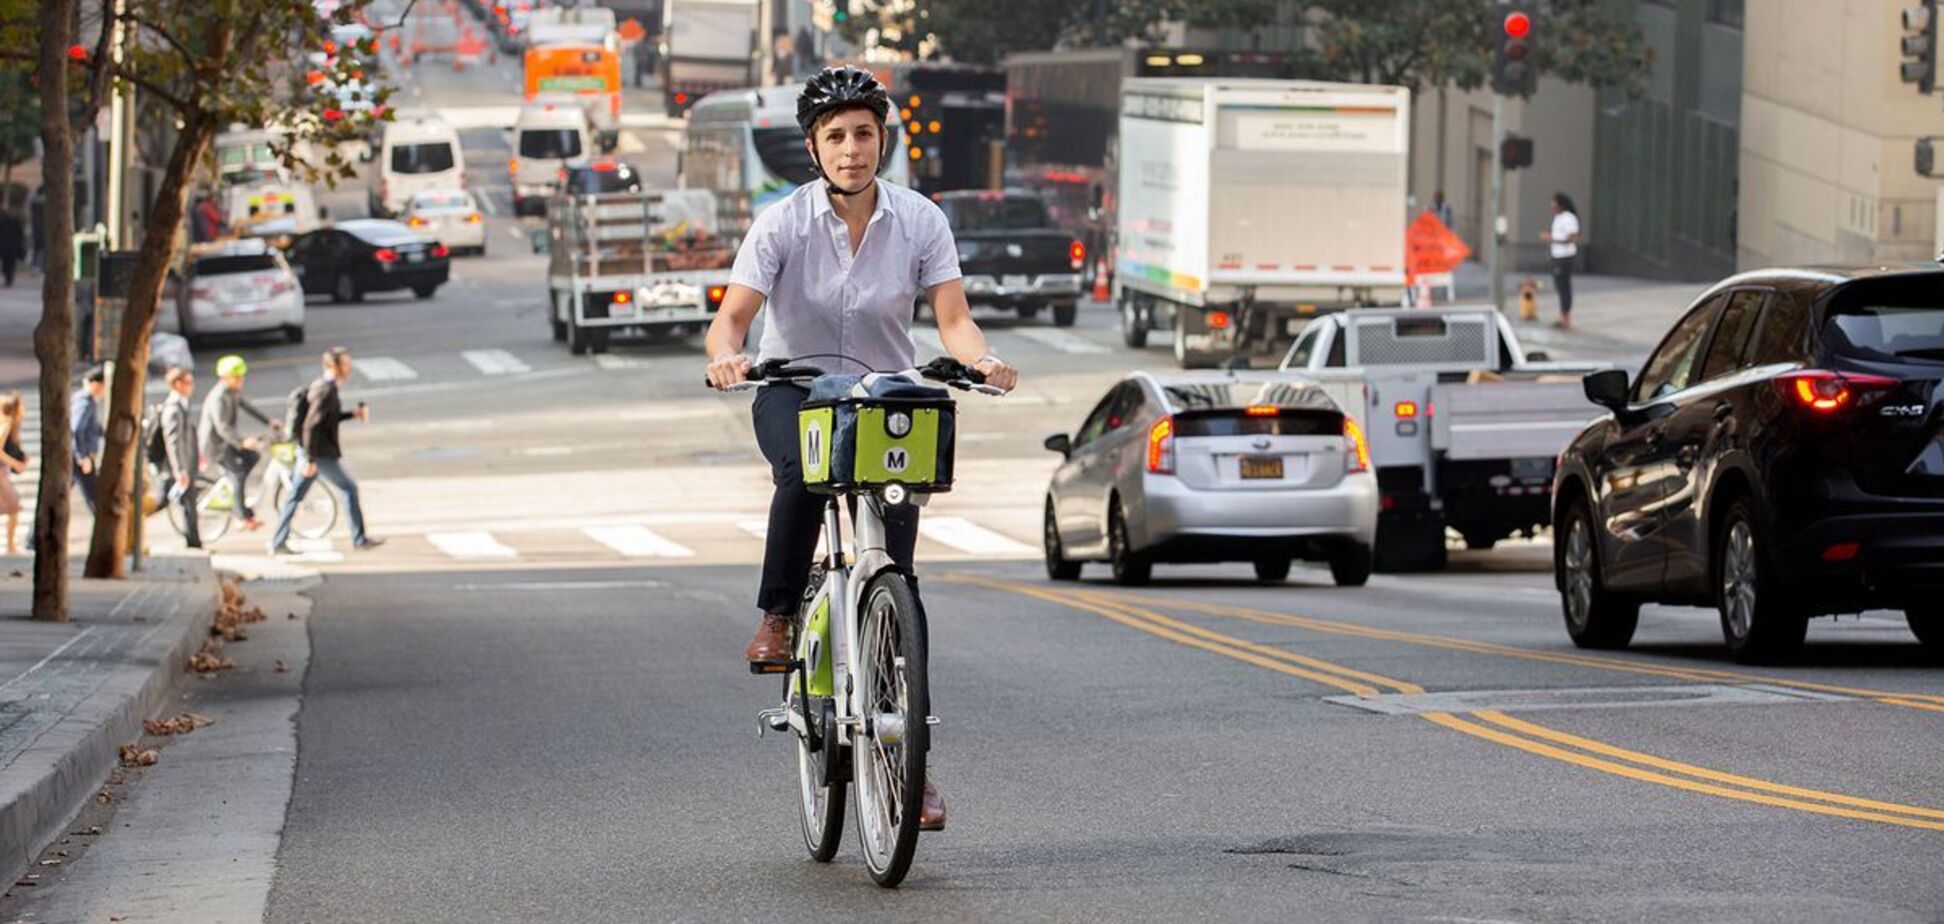 Е-велосипед проти авто: в чому переваги двоколісного транспорту